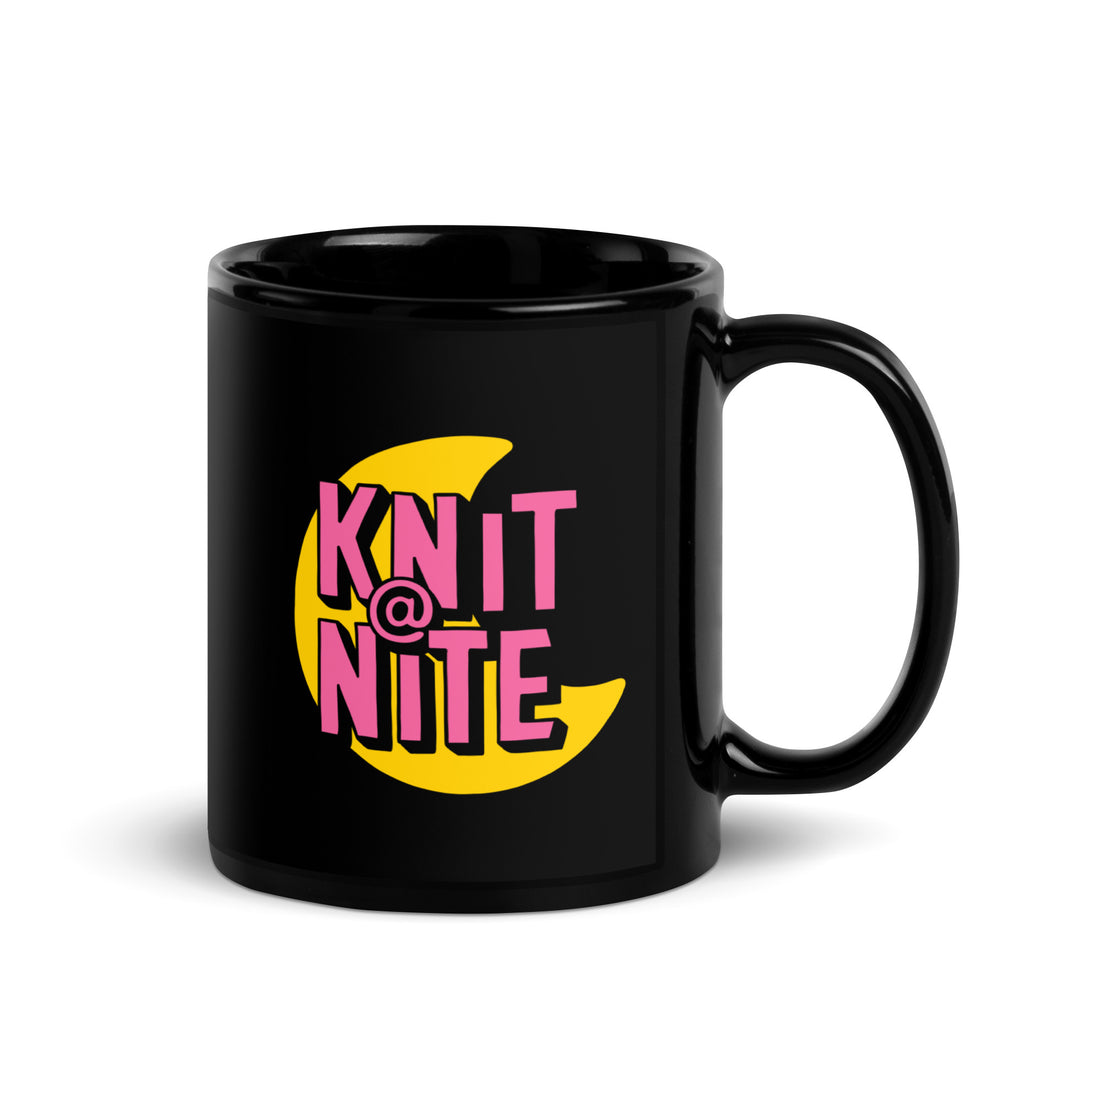 Knit @ Nite Mug